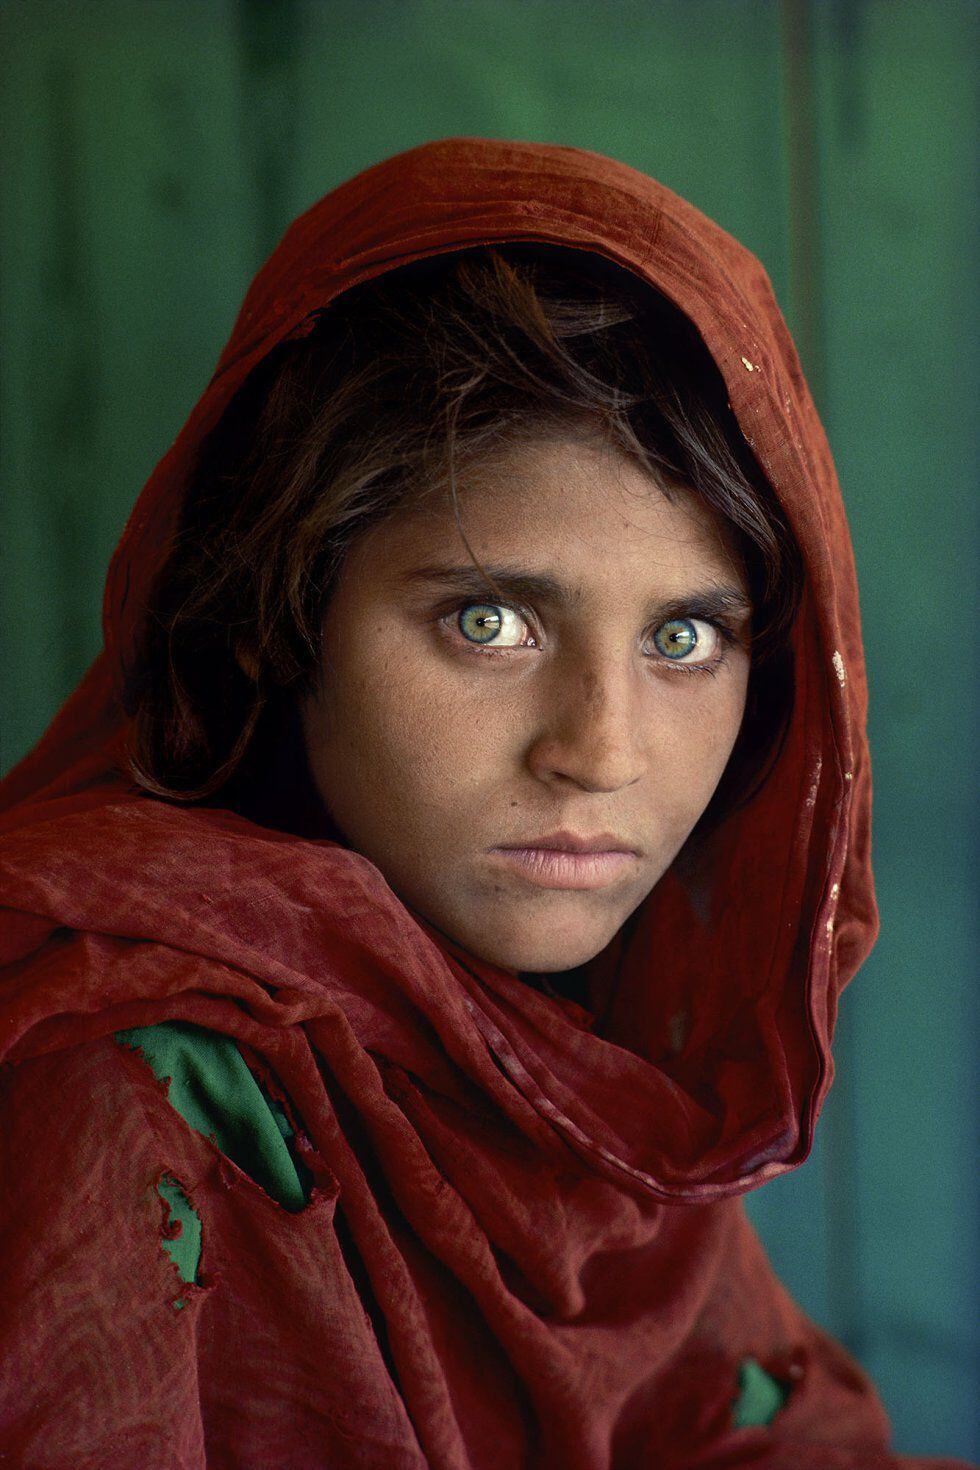 La célebre foto 'La niña afgana', tomada por McCurry en 1984 a Sharbat Gula y que fue portada de 'National Geographic'.